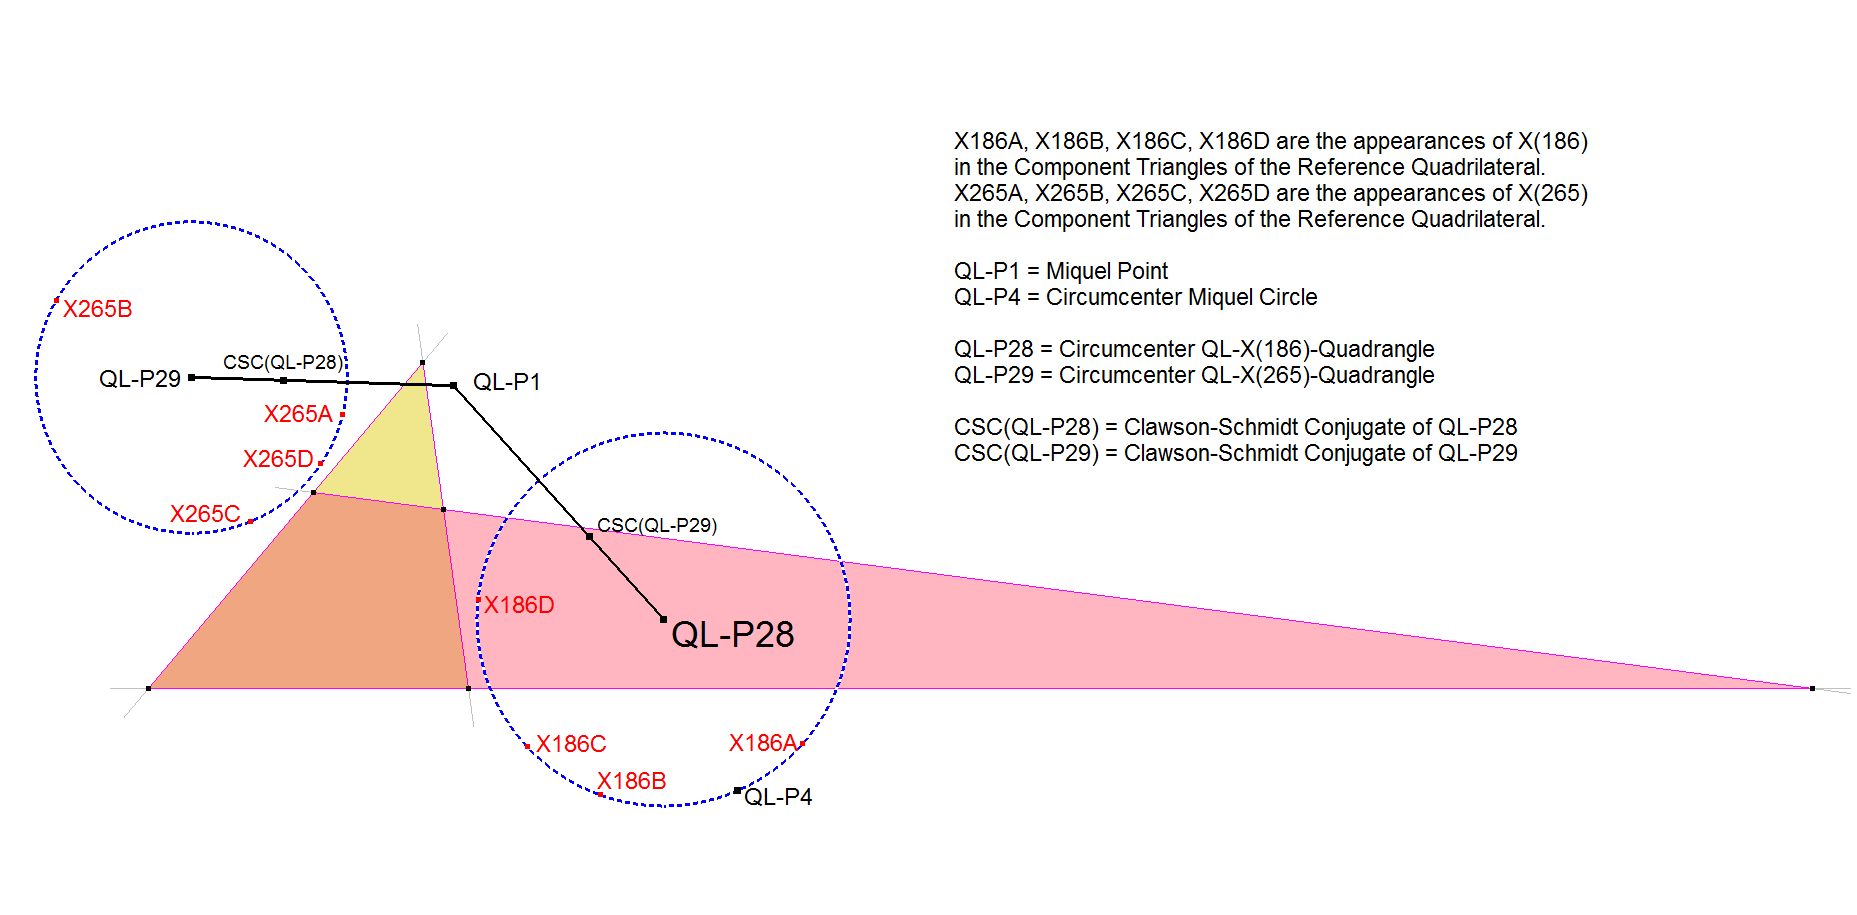 QL-P28-Circumcenter QL-X(186)-Quadrangle-01